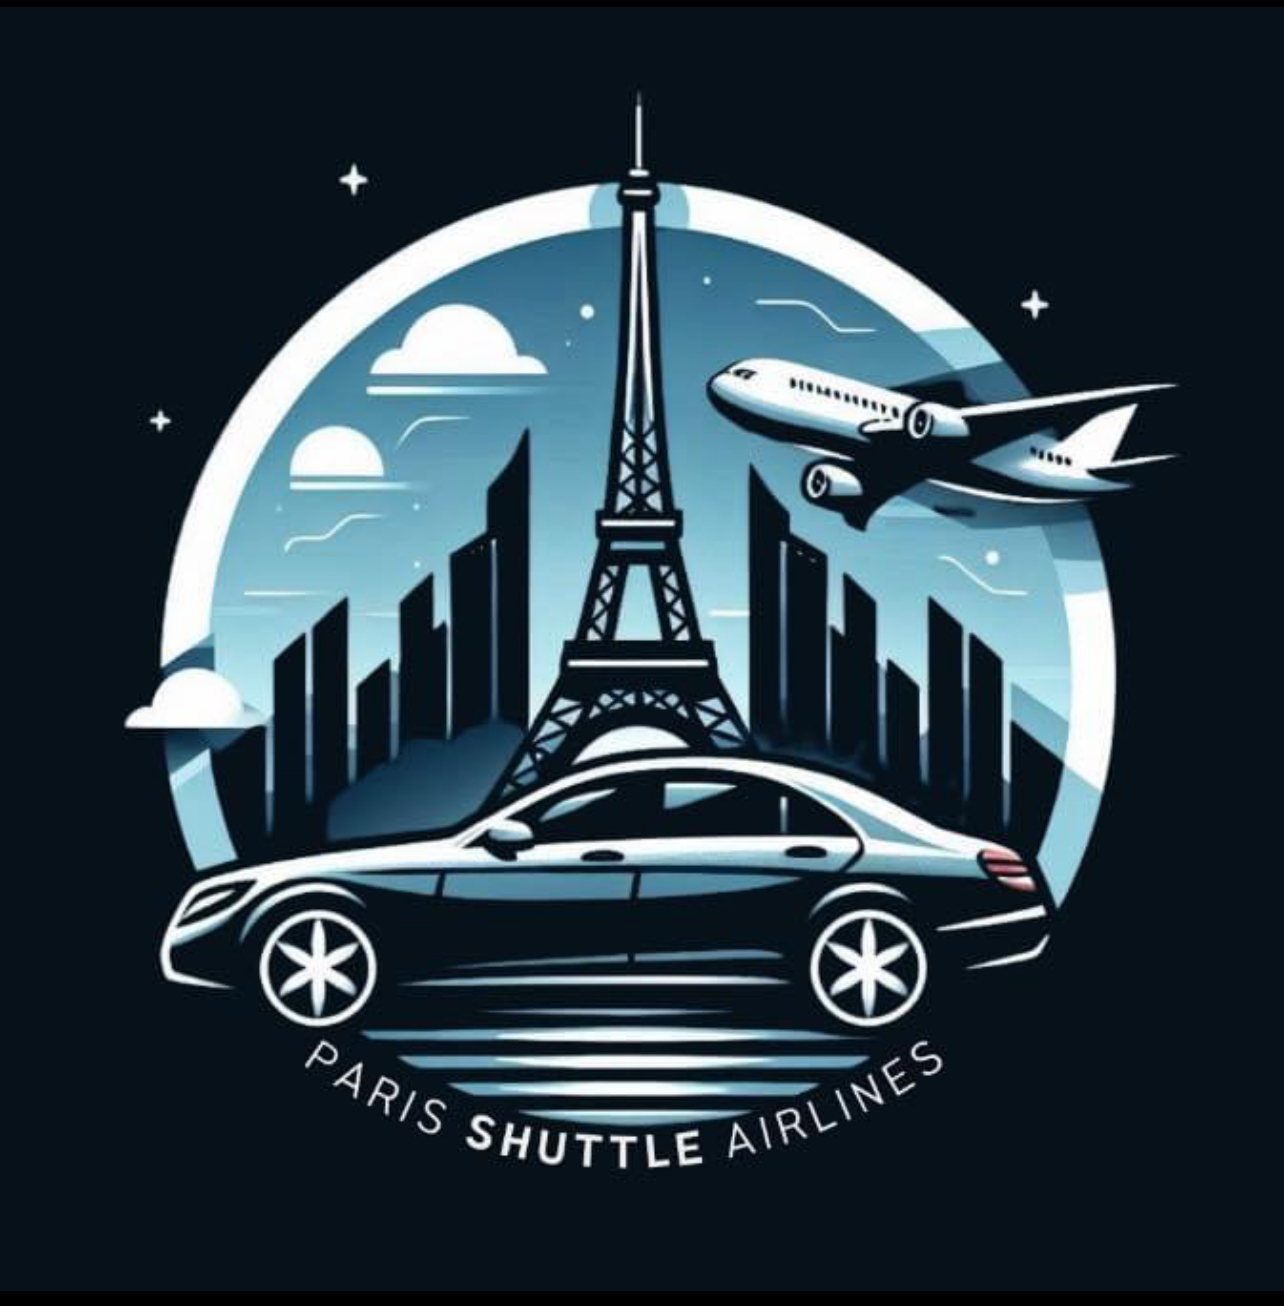 Paris Shuttle Airlines®